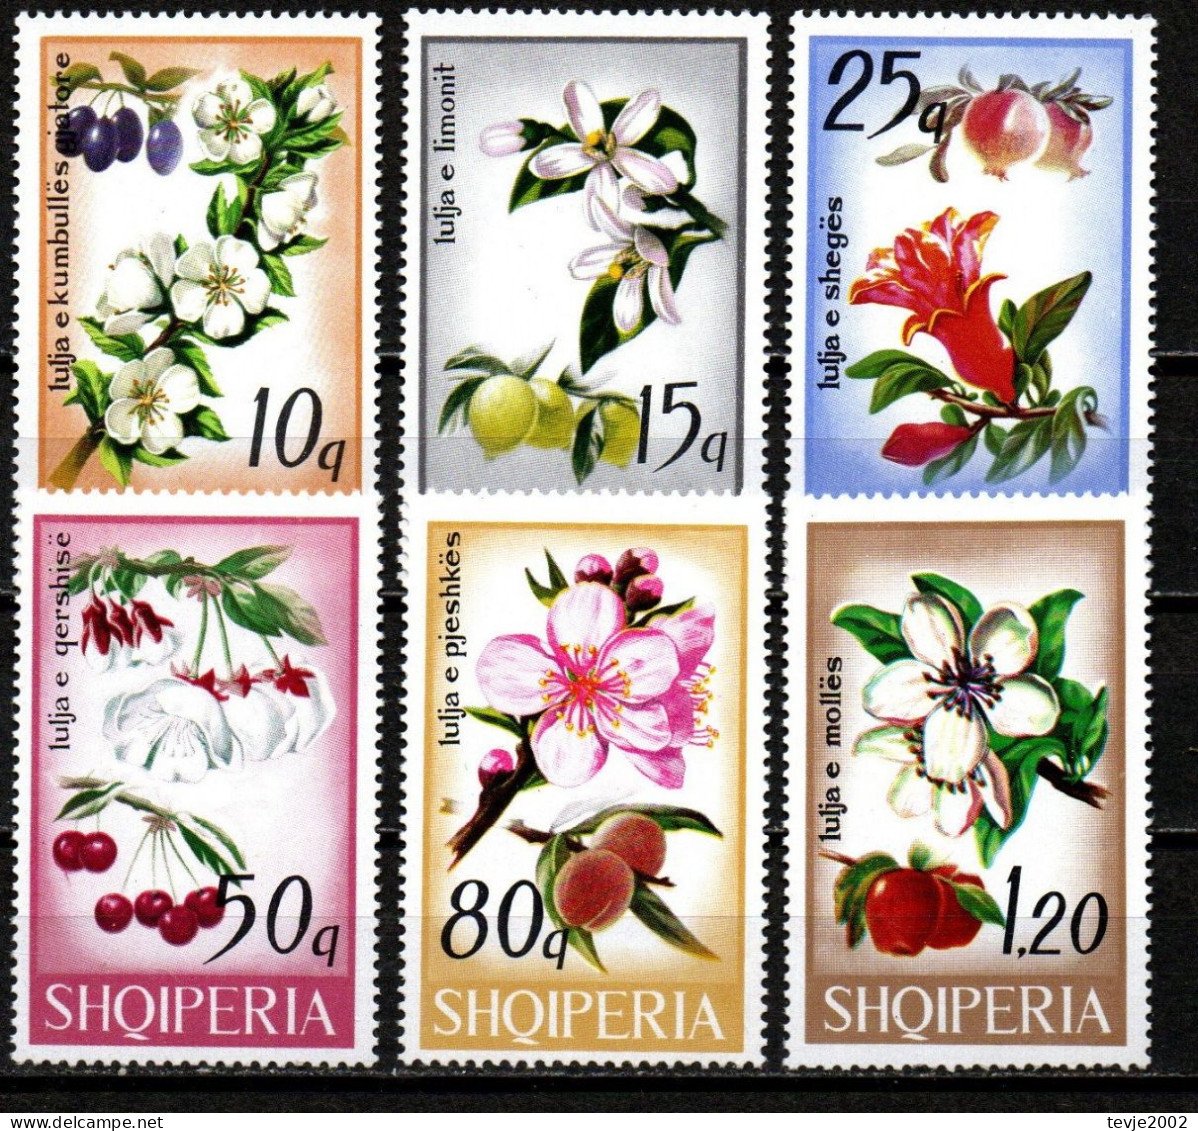 Albanien 1969 - Mi.Nr. 1362 - 1367 - Postfrisch MNH - Pflanzen Plants Obst Fruits - Obst & Früchte